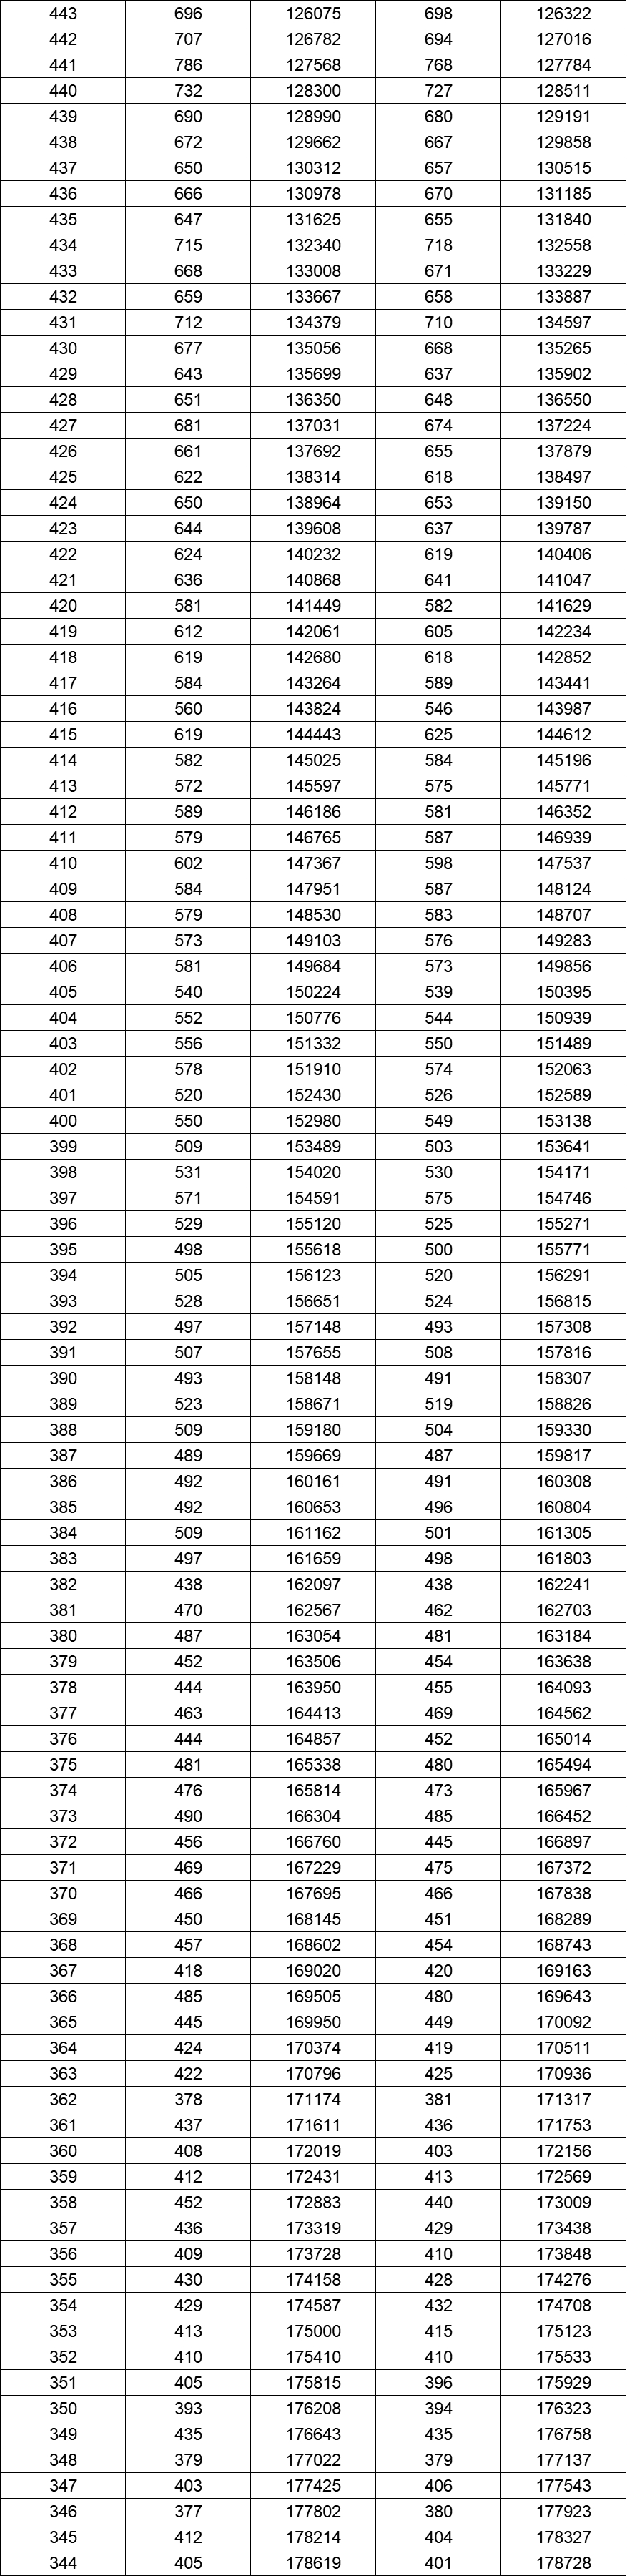 八省联考成绩对照:湖南2020高考文史类一分一段表